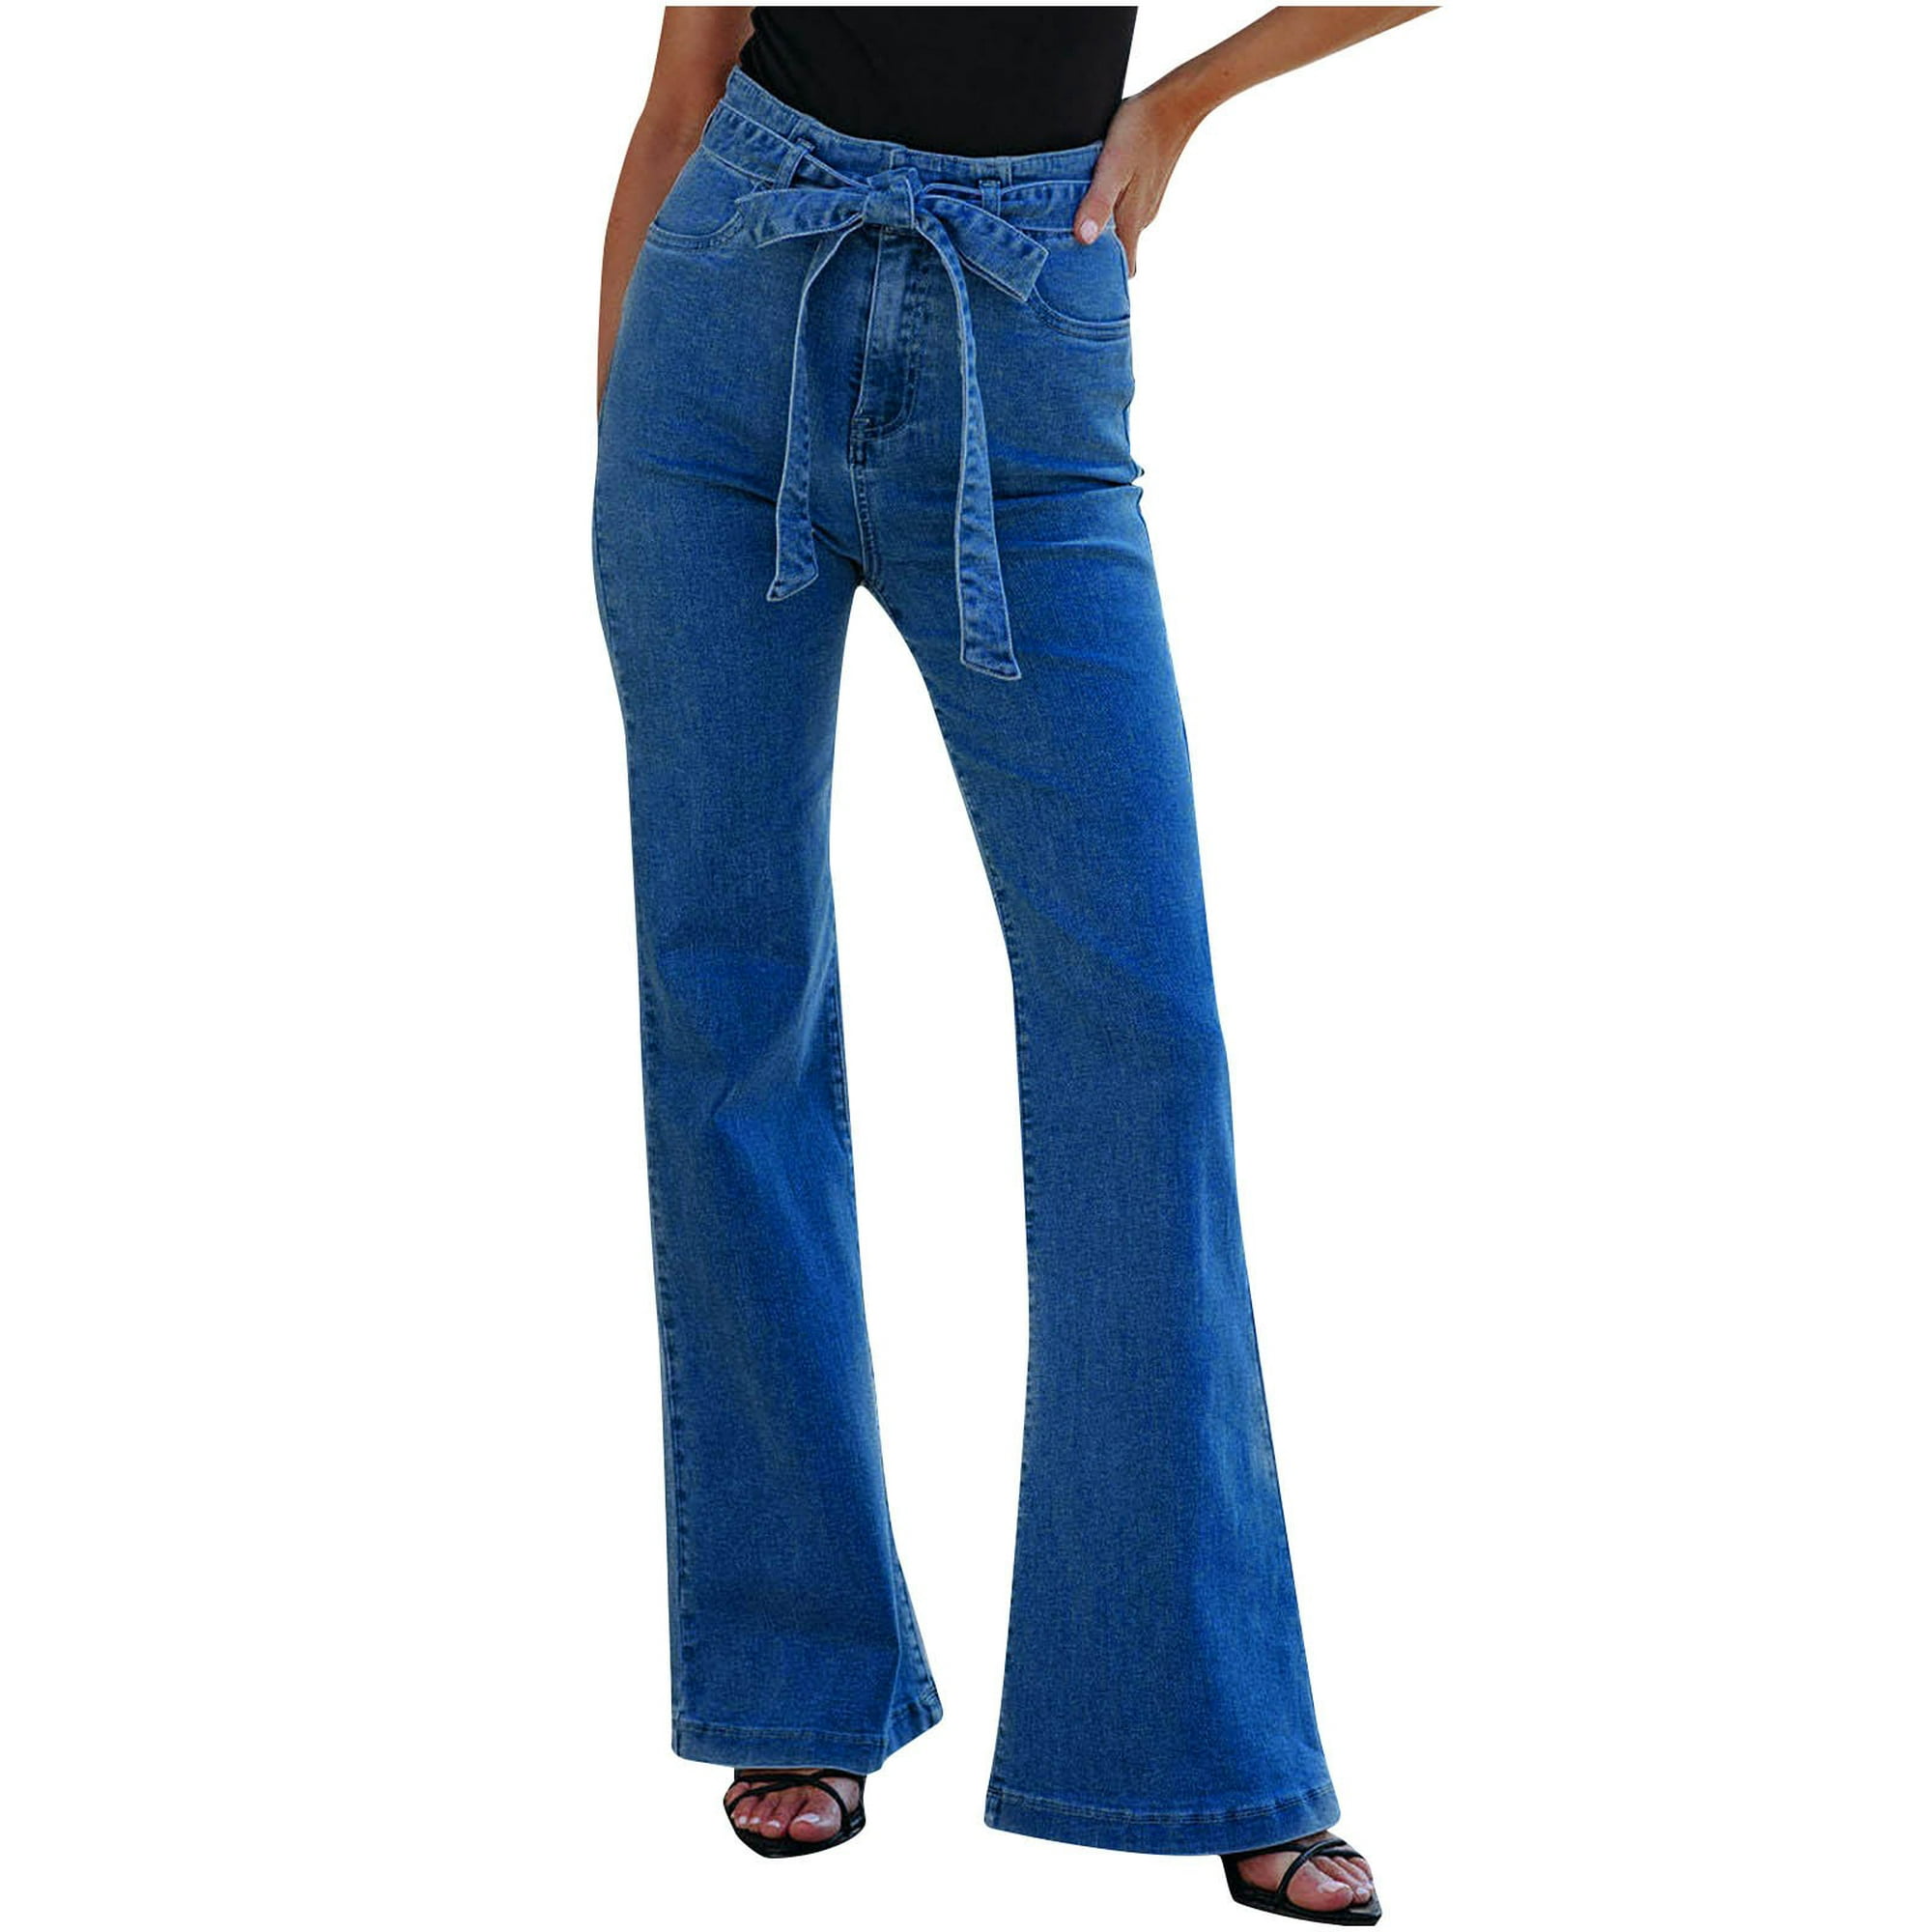 Pantalones casuales de mujer Cintura alta Slim Fit Damas de mujer